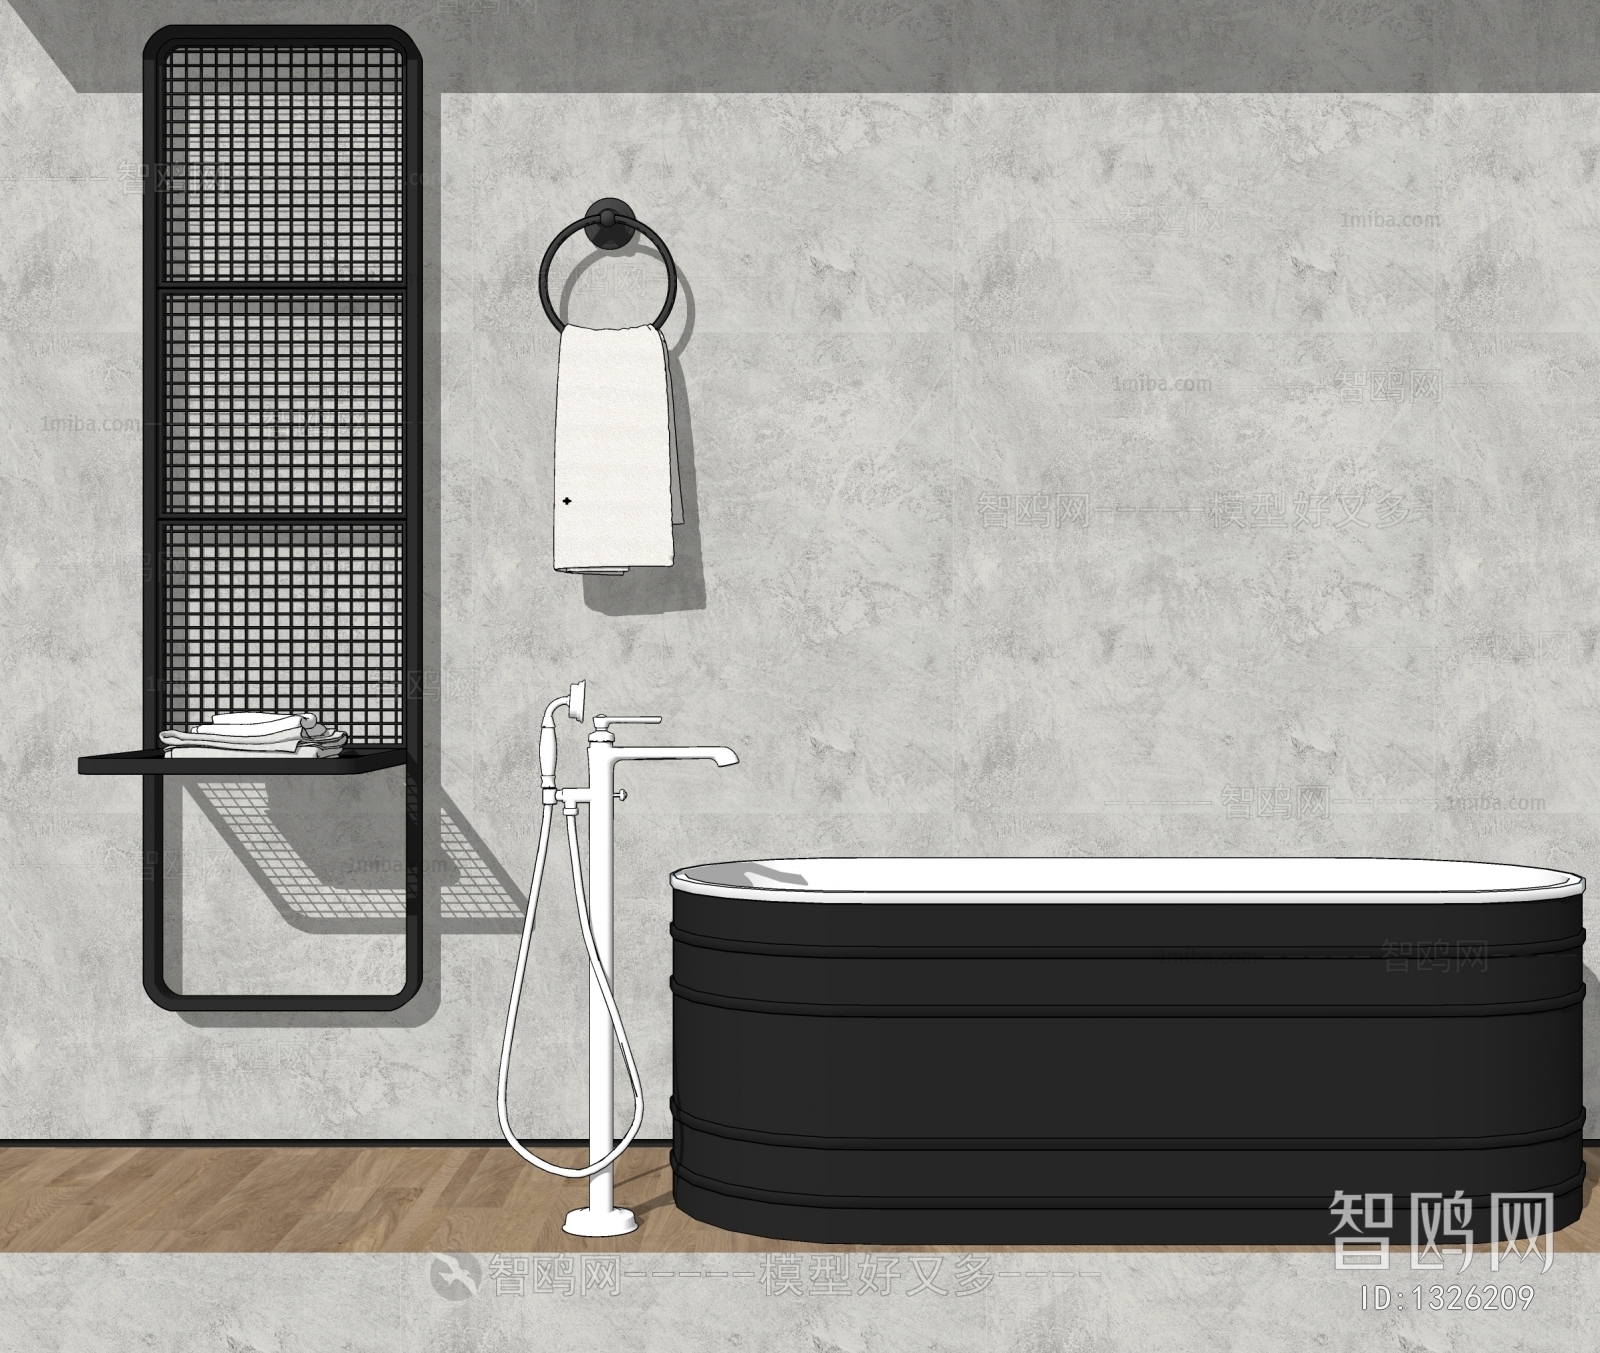 Industrial Style Bathtub